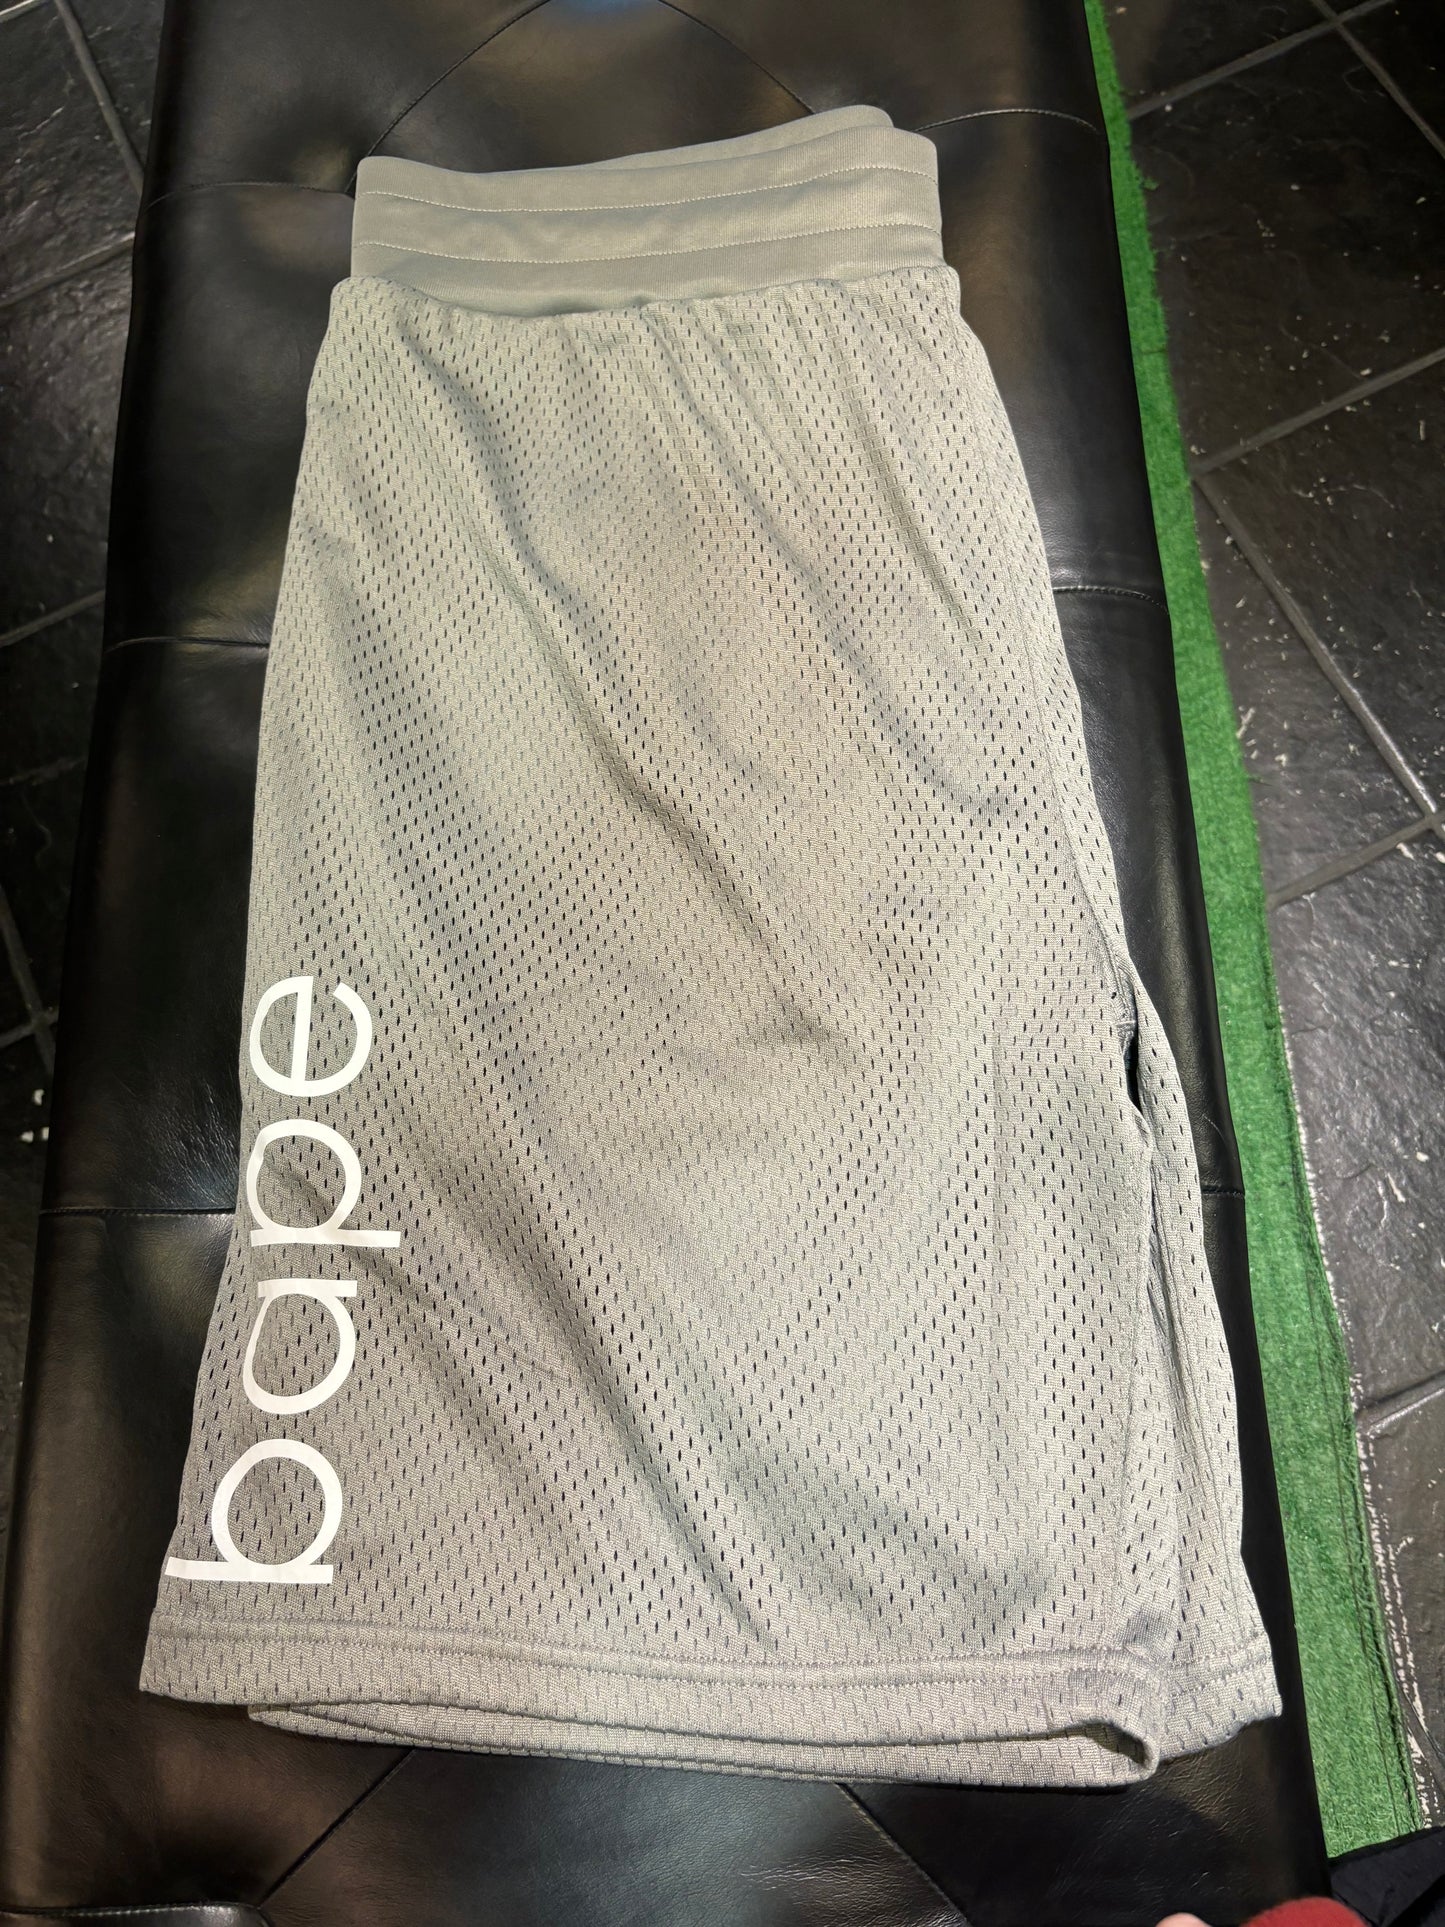 Bape Grey Shorts Sz 3X $220